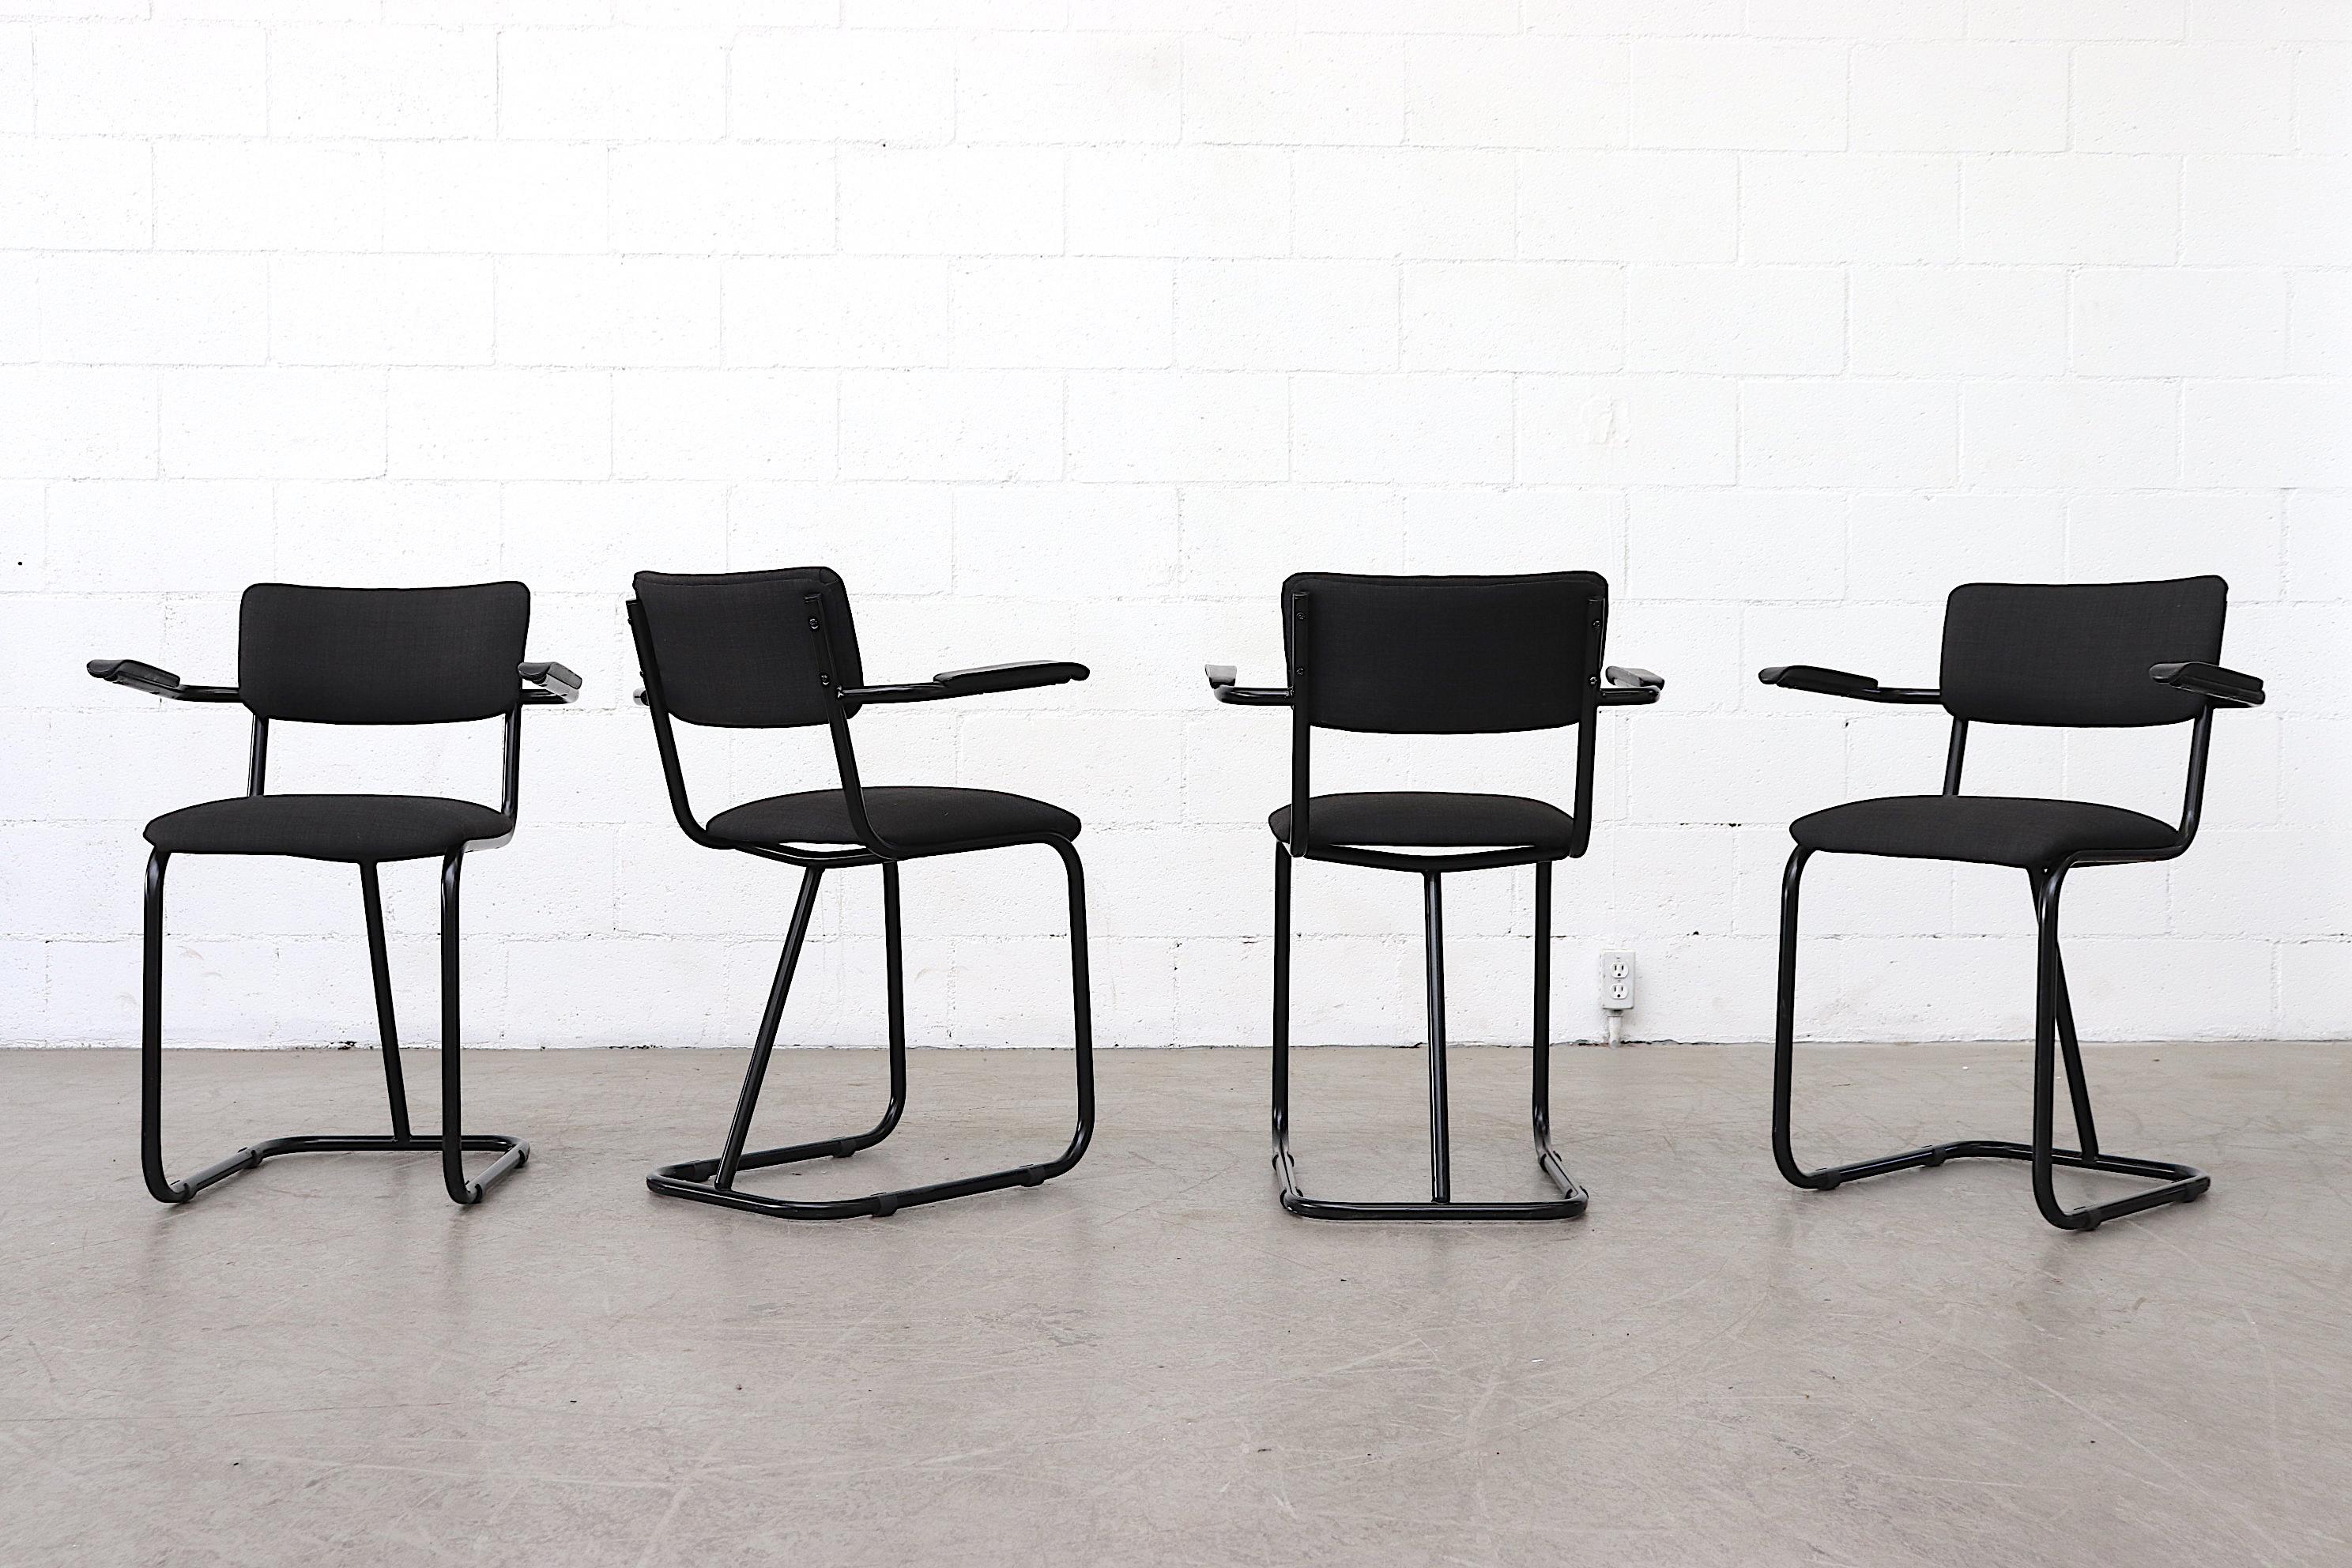 Au milieu du siècle, Fana Metaal a produit des chaises avec des cadres en métal tubulaire rembourrés, avec un poteau de support central et des accoudoirs en acrylique. Les cadres sont en bon état avec quelques signes d'usure liés à l'âge. Prix fixe.